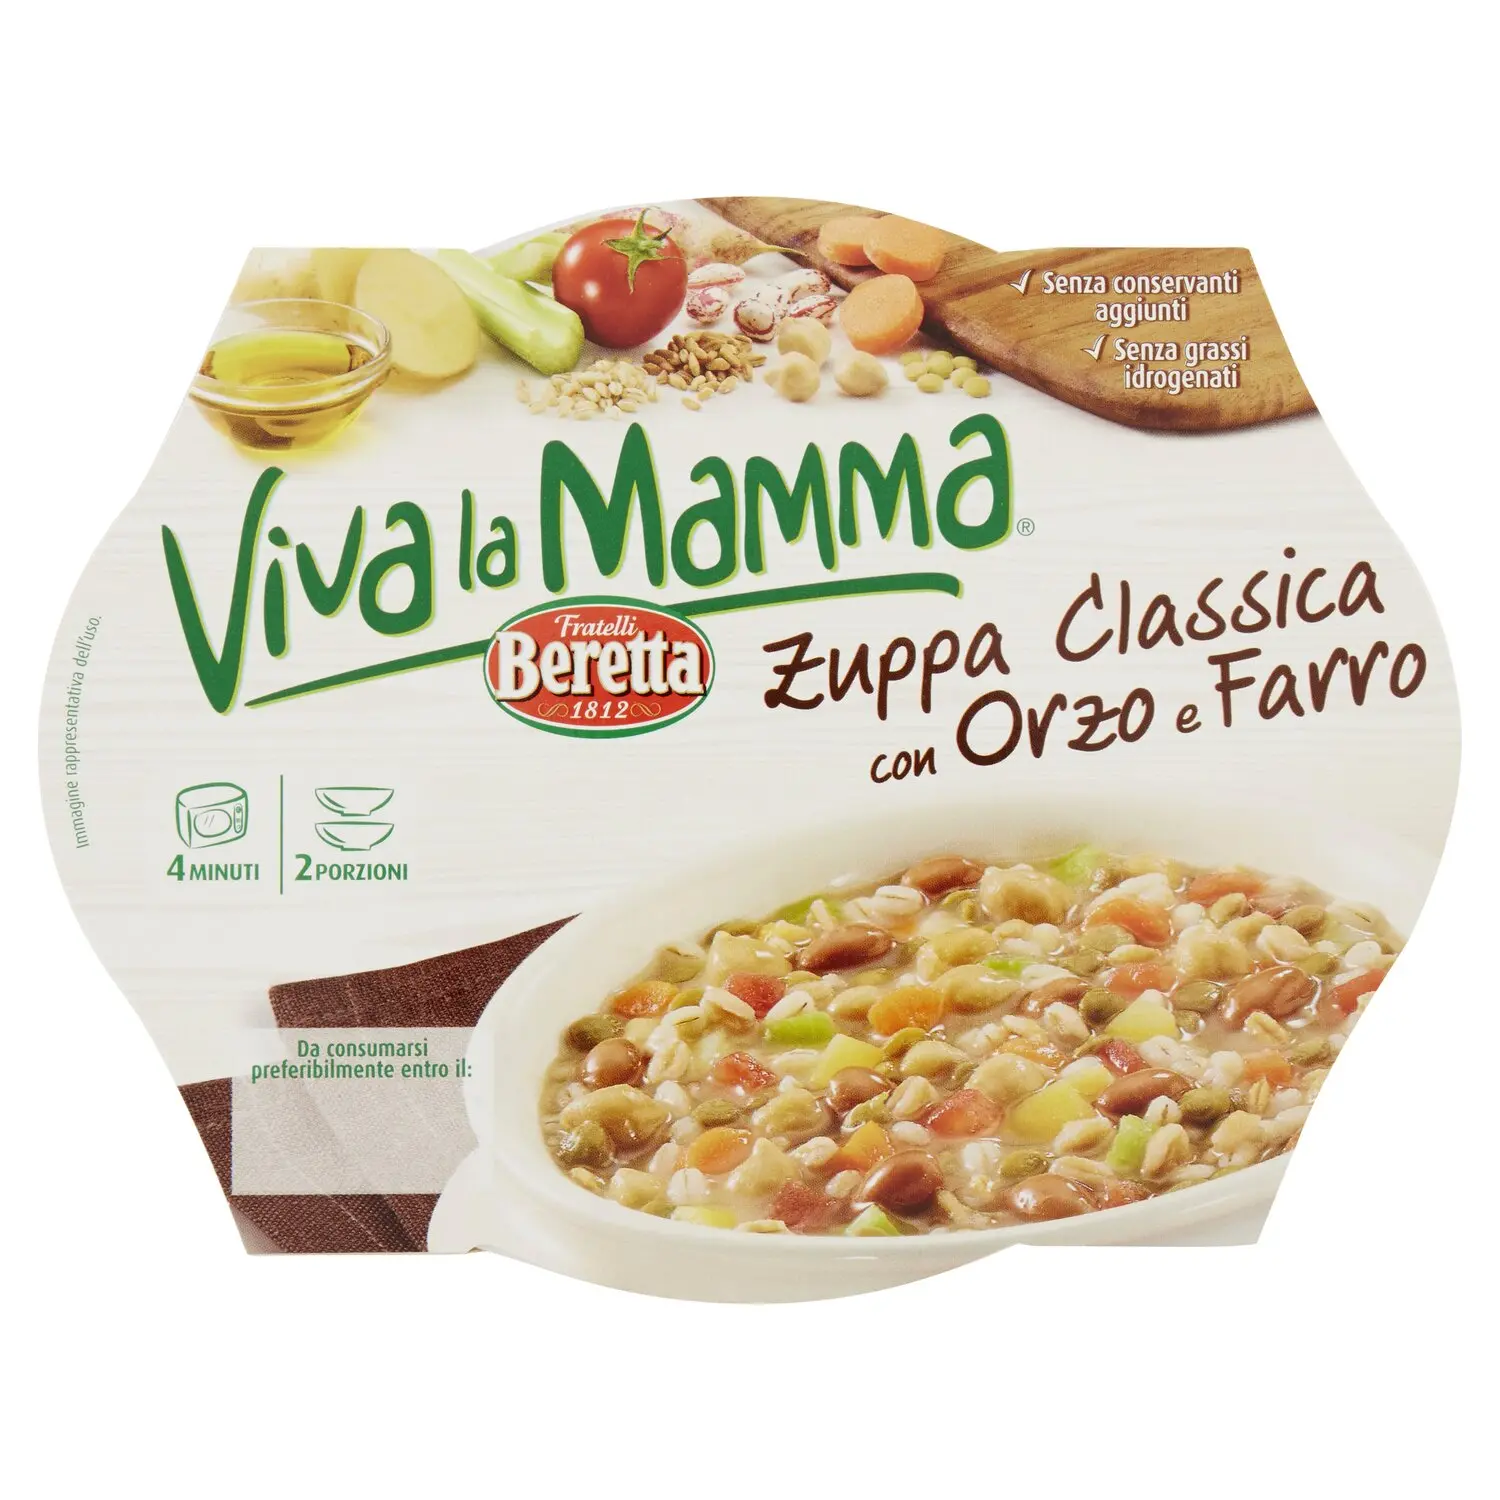 Fratelli Beretta Viva la Mamma Zuppa Classica con Orzo e Farro 600 g